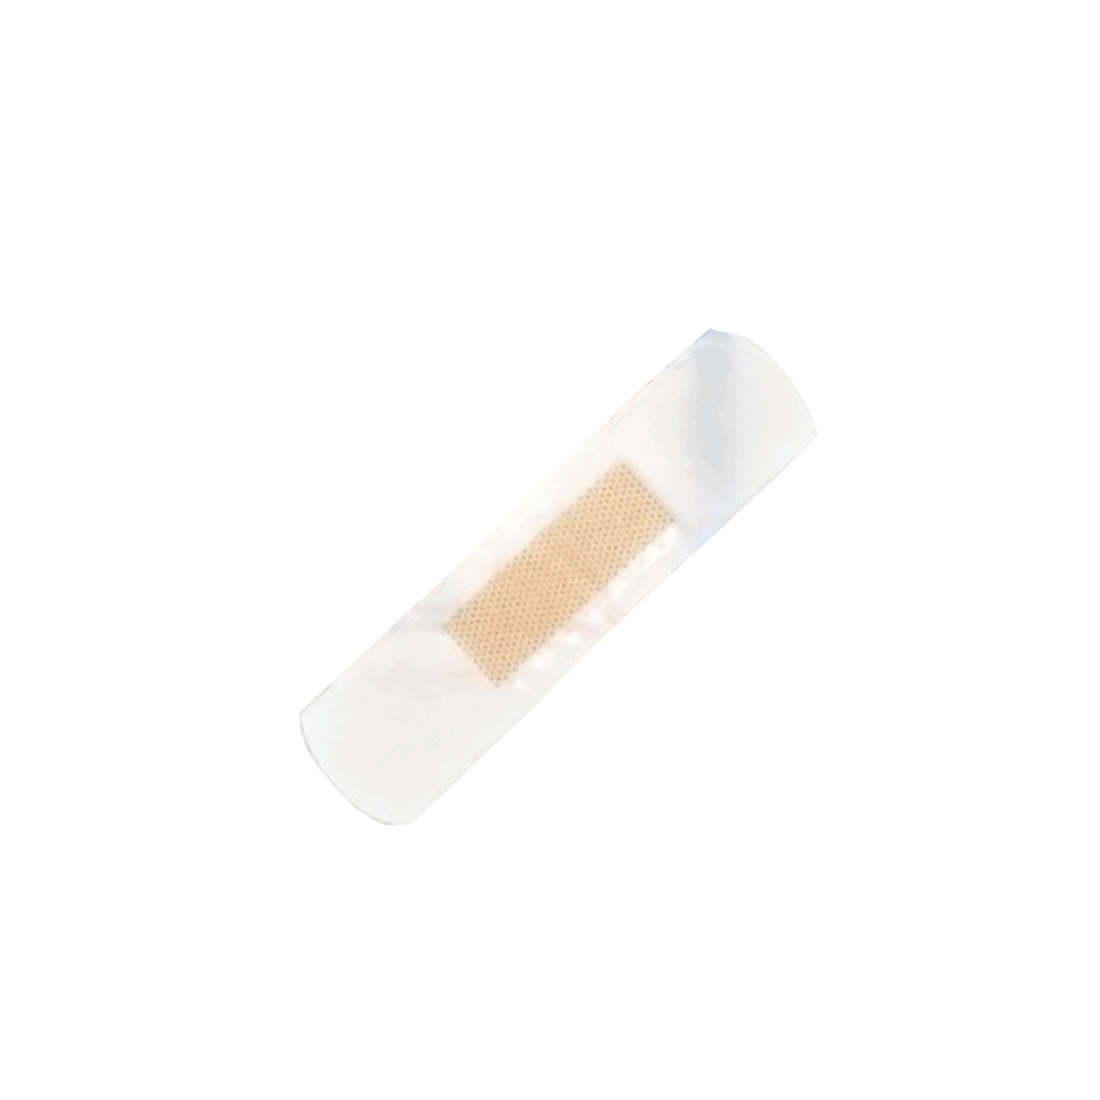 Pansements adhesifs steriles – en plastique – enveloppes separement